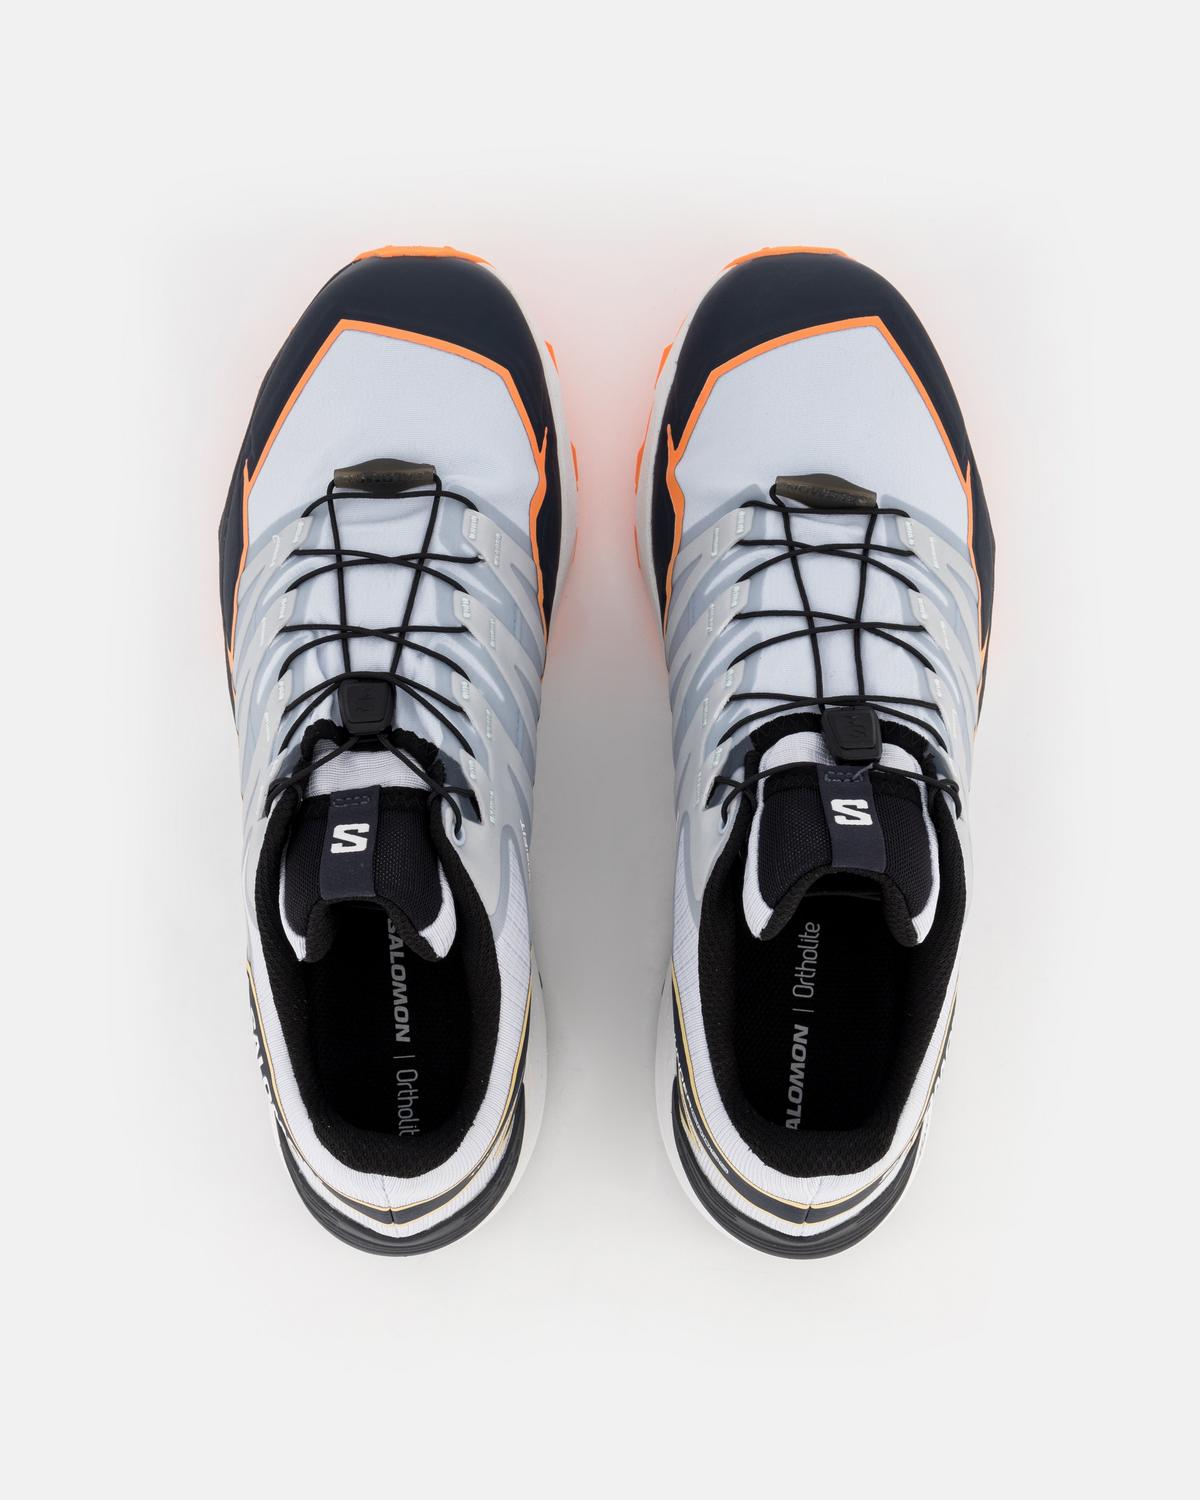 Salomon Men's Thundercross Trail Running Shoes -  lightgrey